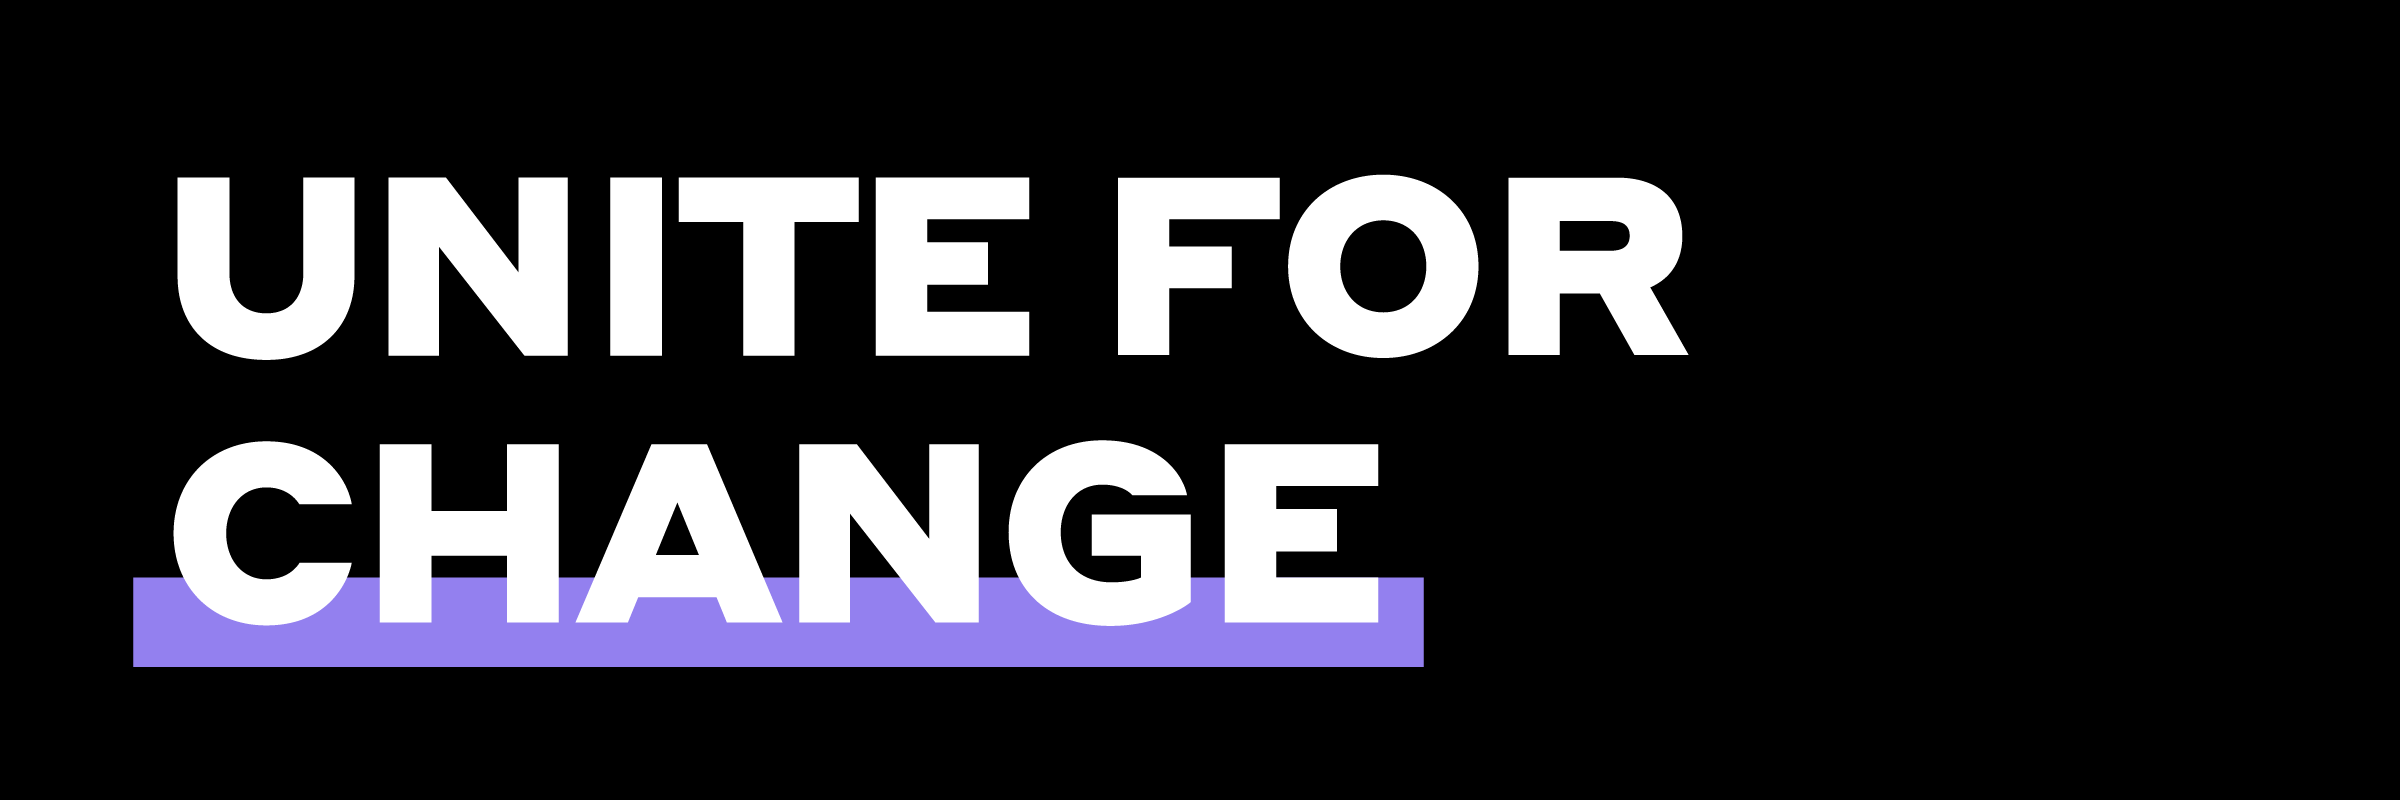 Unite for Change_Logo_EN.png